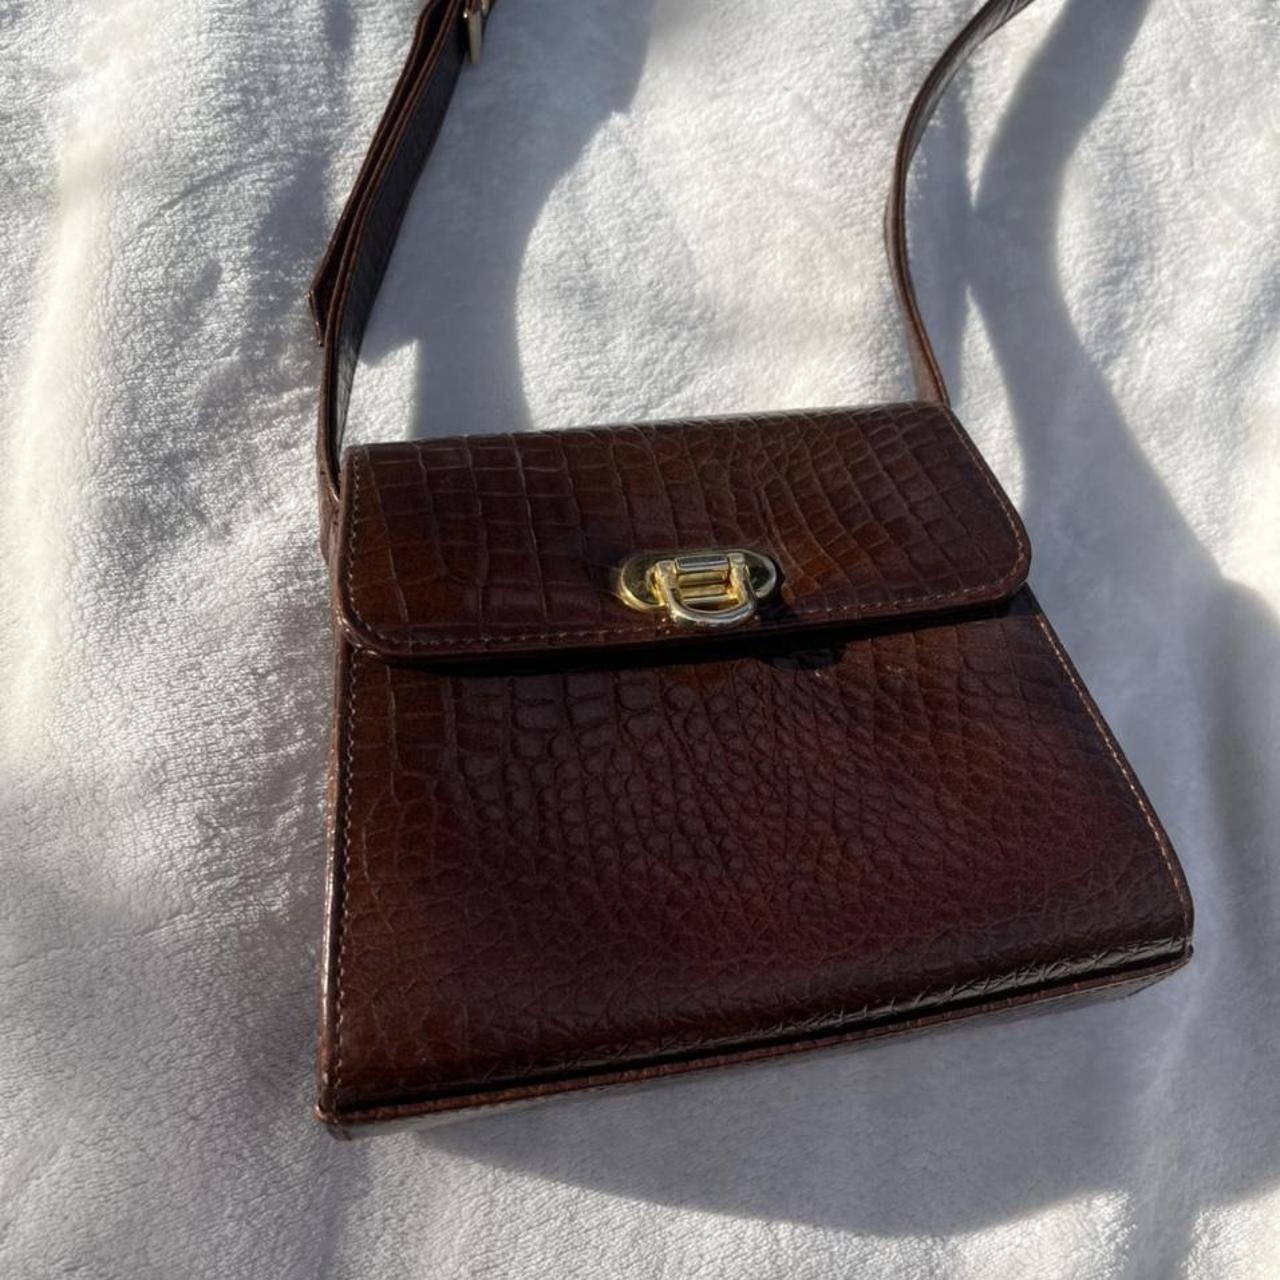 Vintage brown leather bag with adjustable shoulder... - Depop